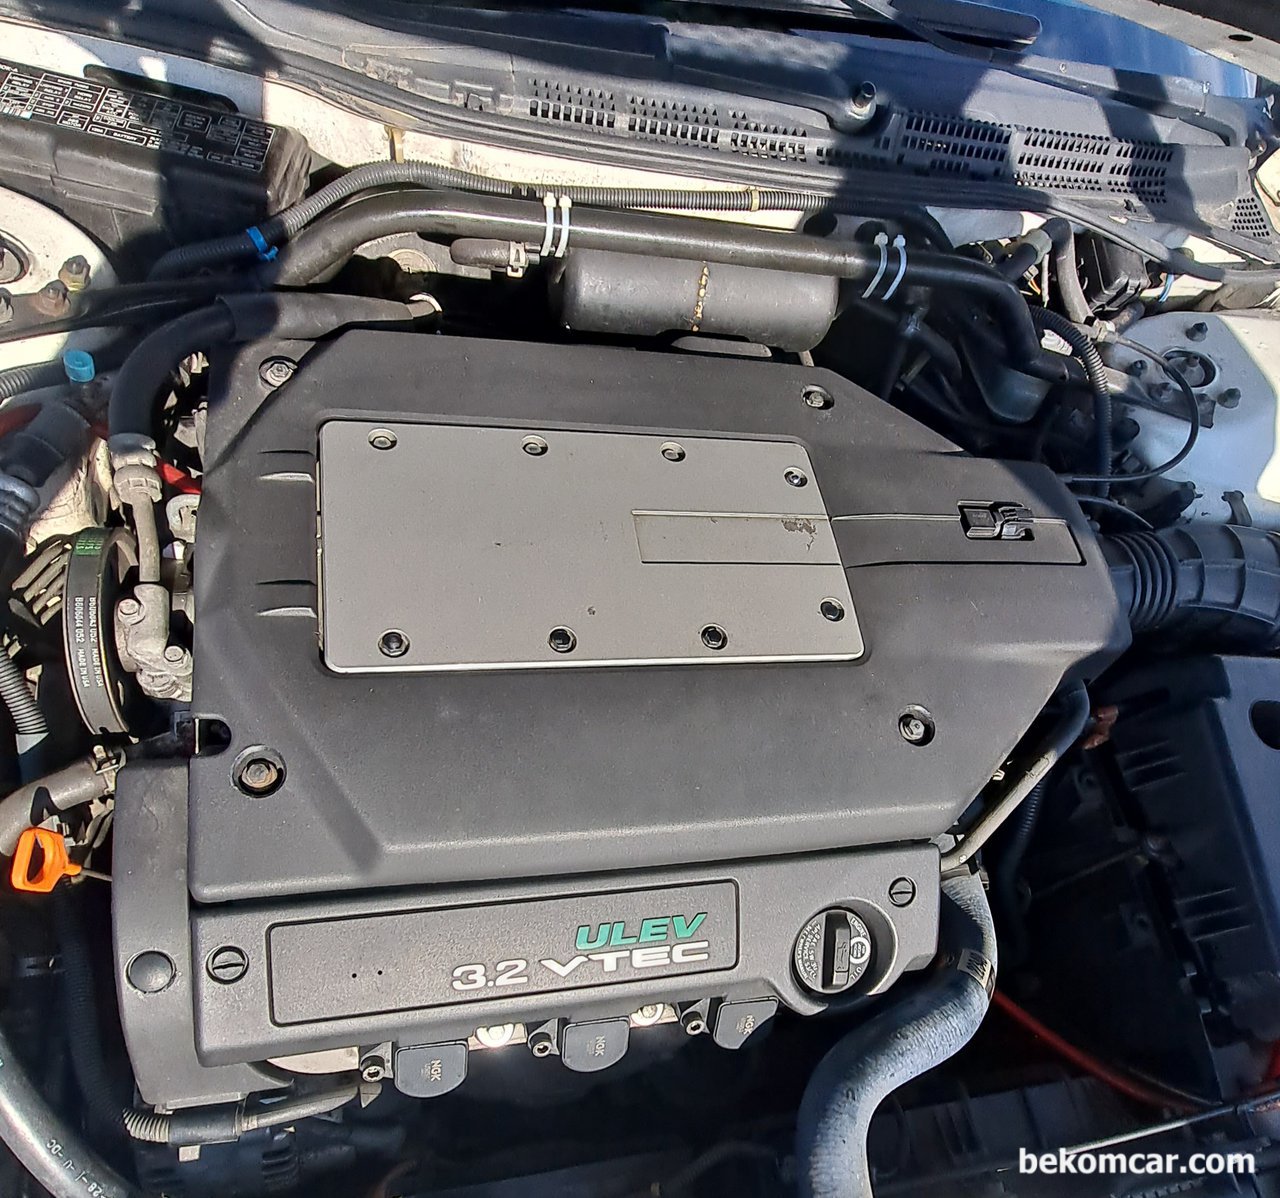 2000년 아큐라 TL 3.2 SOHC V6 엔진룸, 아큐라 TL 3.2 SOHC V6 엔진룸으로 엔진커버가 있는 상태이다.|베콤카 (bekomcar.com)